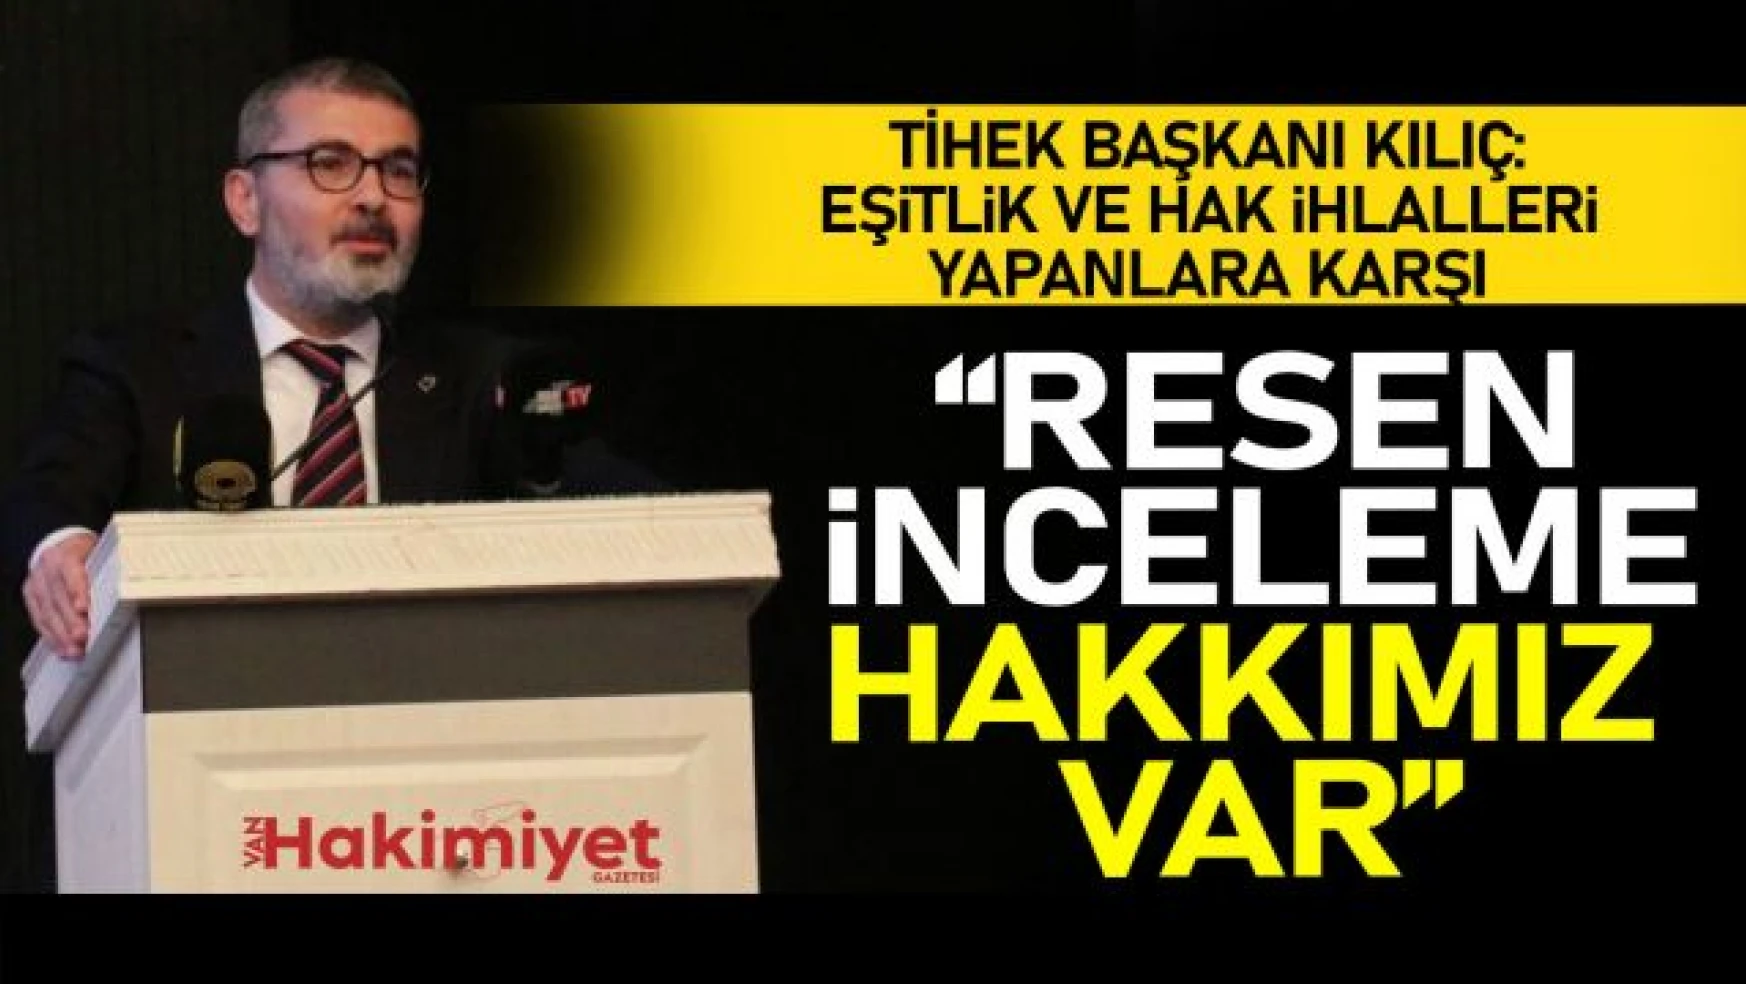 TİHEK Başkanı Kılıç Van'da konuştu!